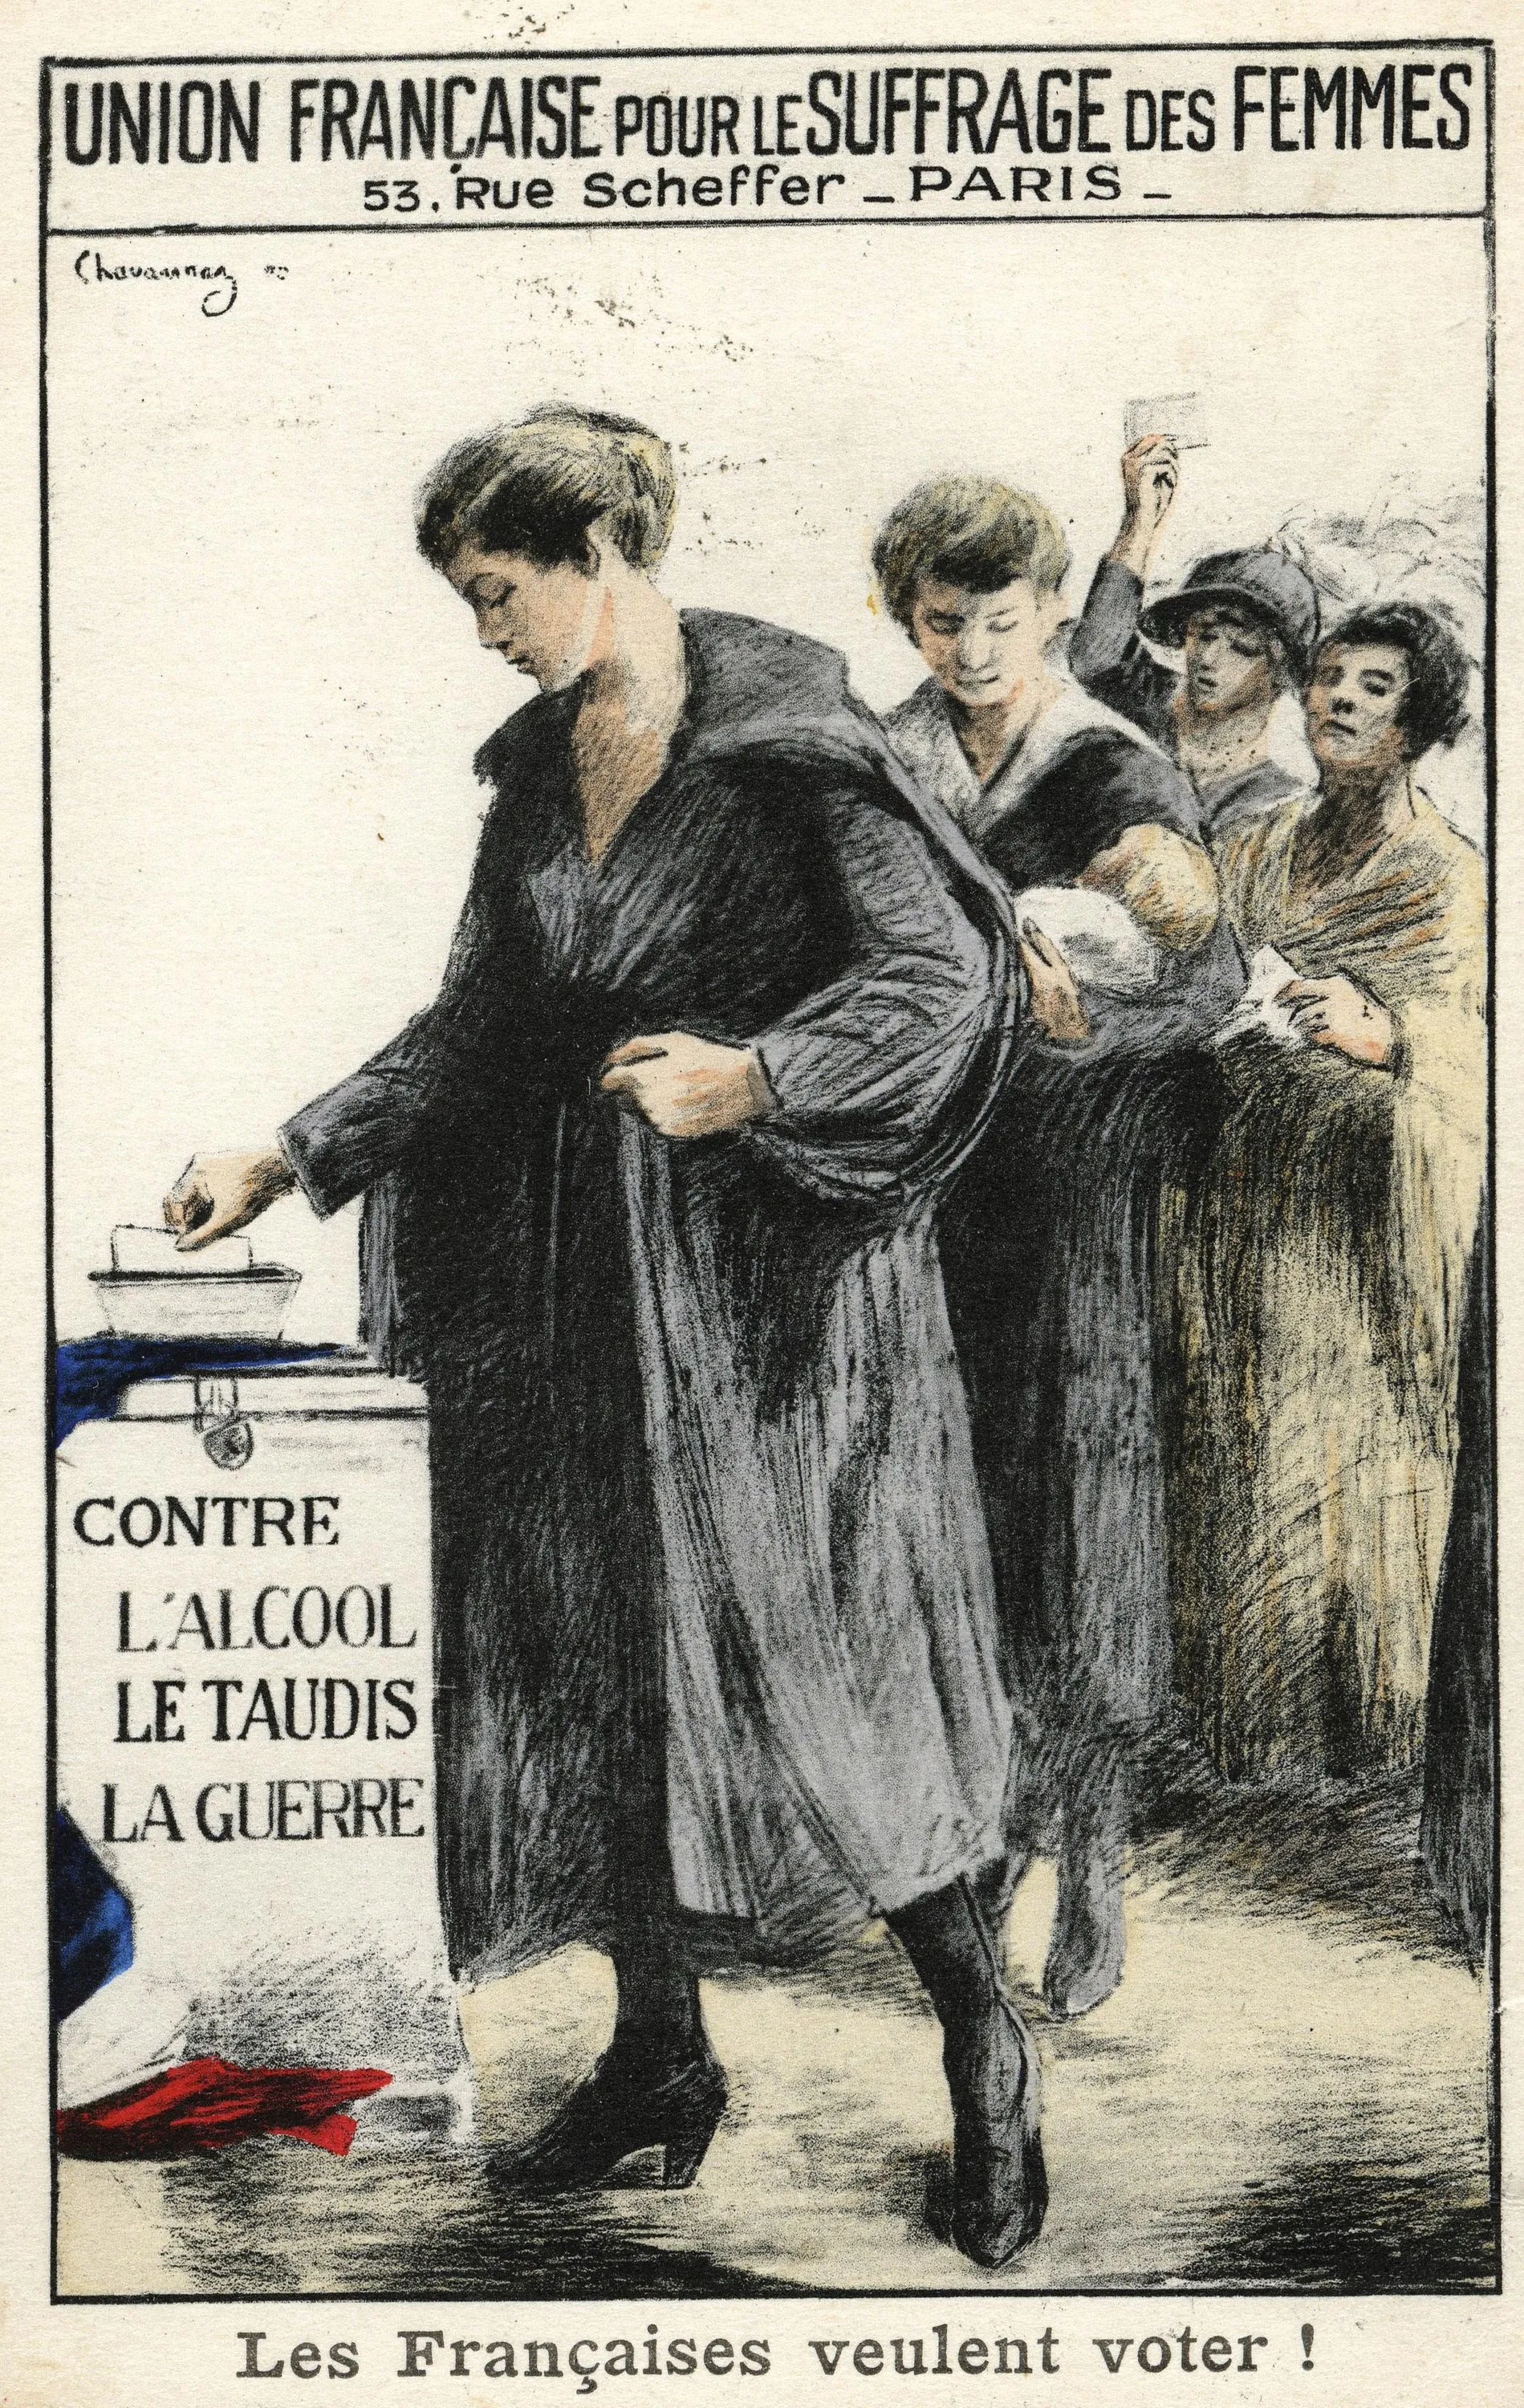 Union française pour le suffrage des femmes, illustration de Chavannas, carte postale, 1909